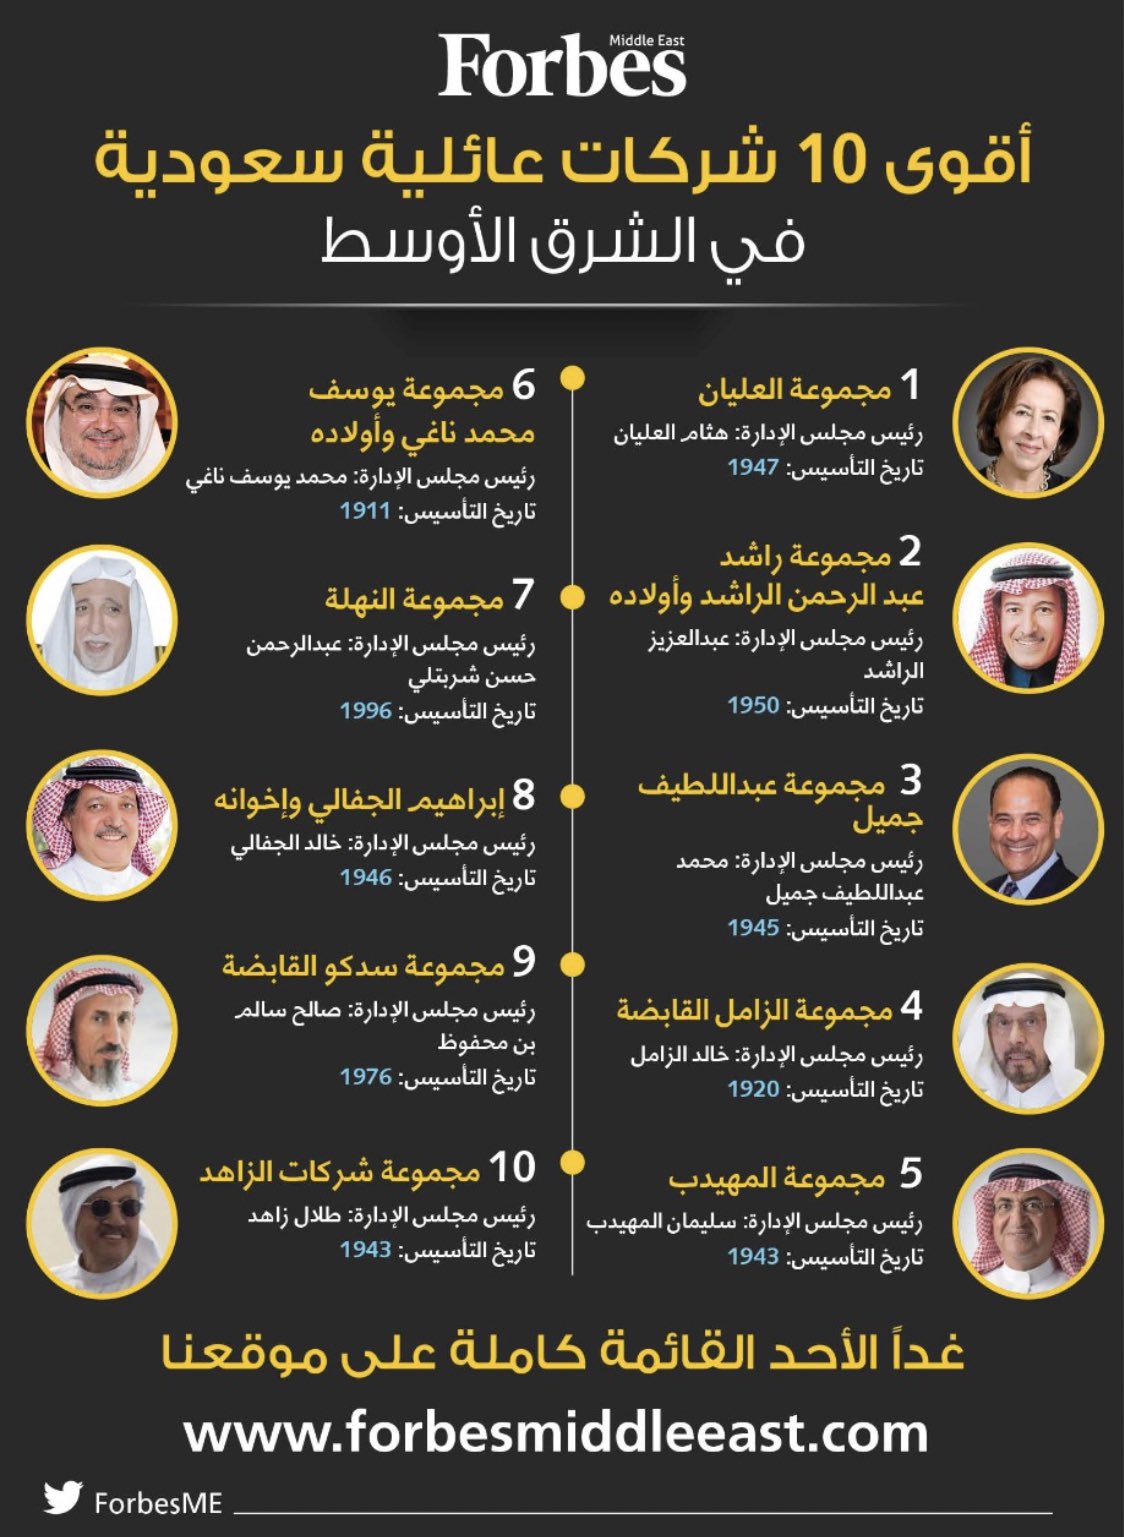 عبدالله مشاط On Twitter أقوى 10 شركات عائلية سعودية من فوربس Forbesme لعام 2020 1 العليان 2 الراشد 3 عبداللطيف جميل 4 الزامل 5 المهيدب 6 الناغي 7 النهلة شربتلي 8 الجفالي